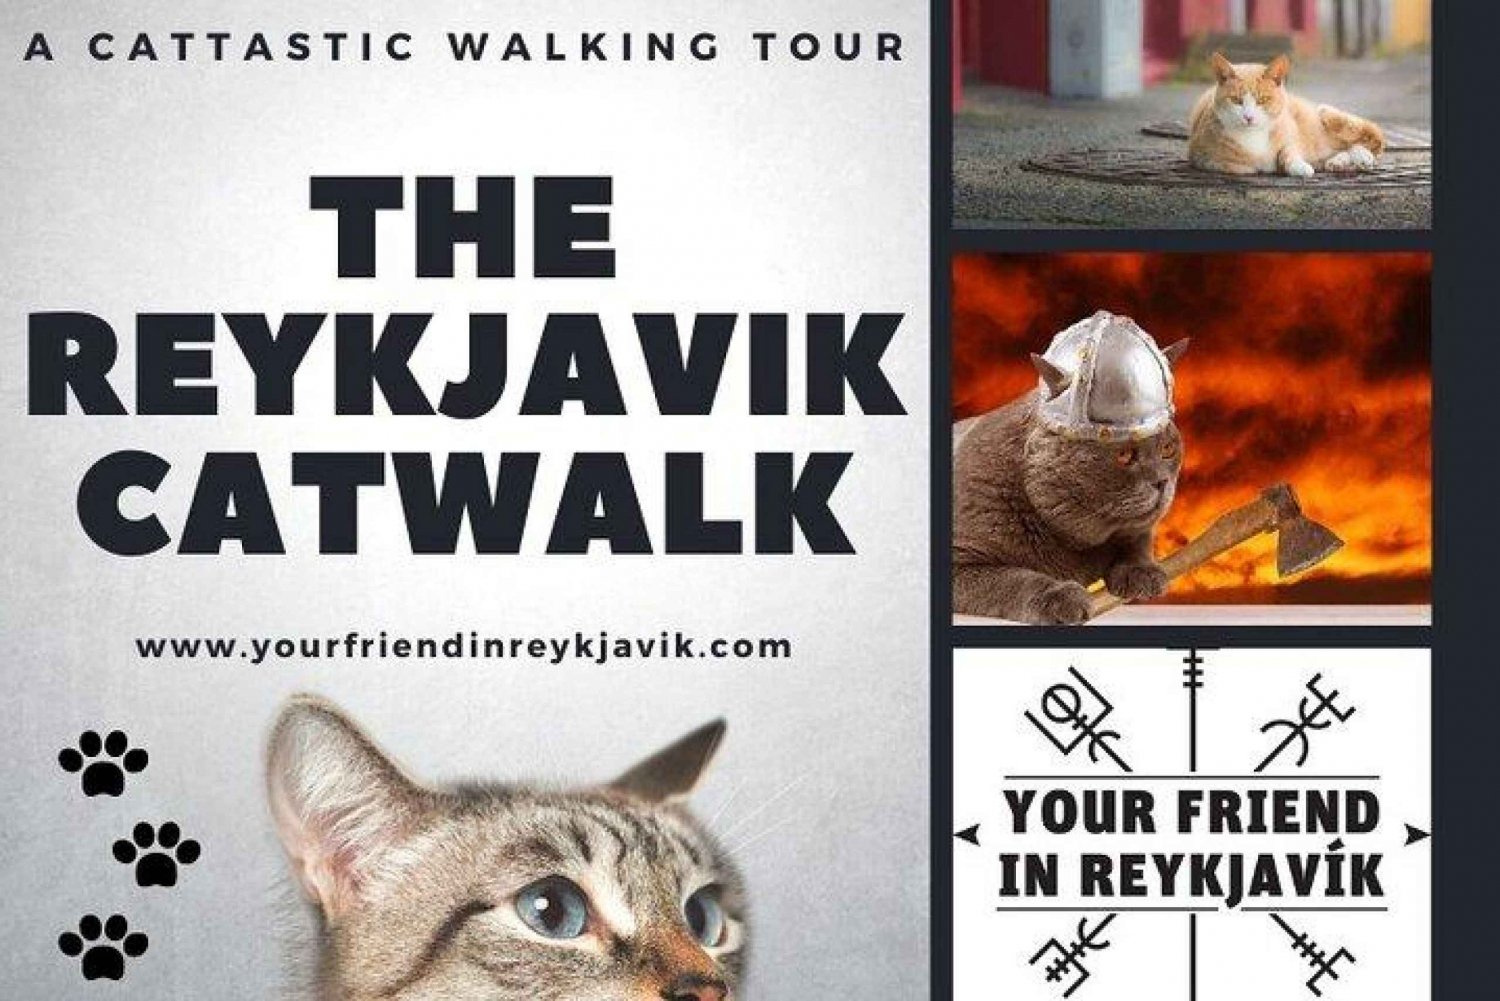 Der private Reykjavik CatWalk